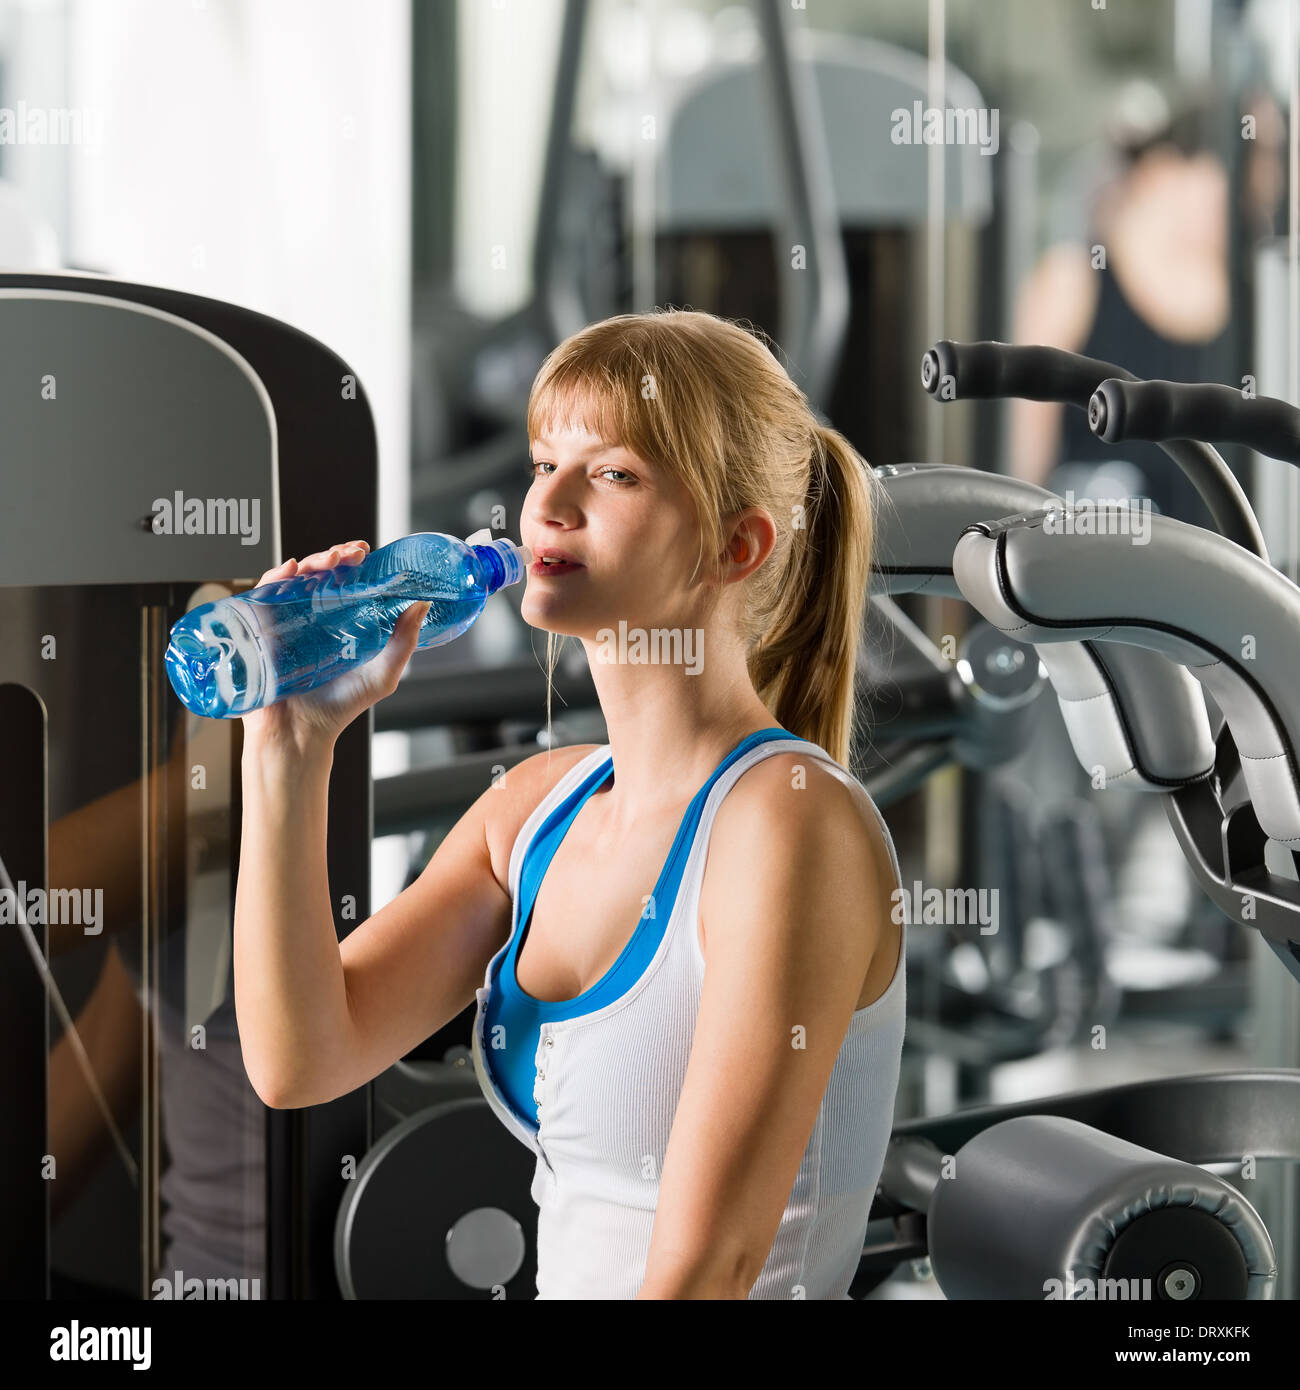 Просв тил б нзин зал пить. Девушка в зале пьет воду. Вода в спортзале. Девушка в фитнес зале пьет воду. Пьет воду в спортзале.